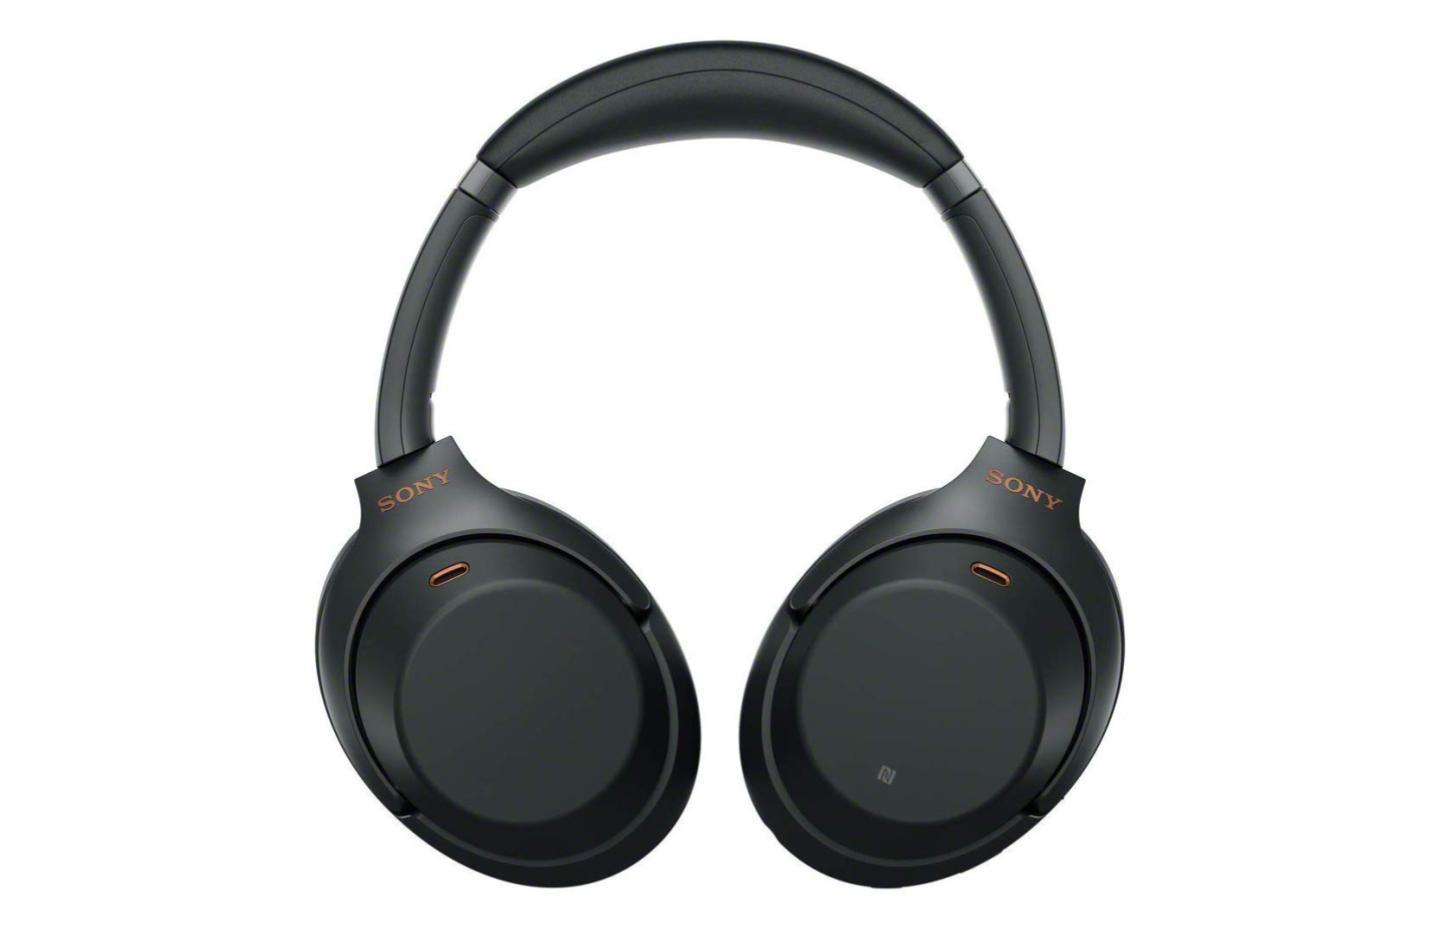 Sony annonce la sortie du WH-1000XM4, son casque à réduction de bruit réduction de bruit